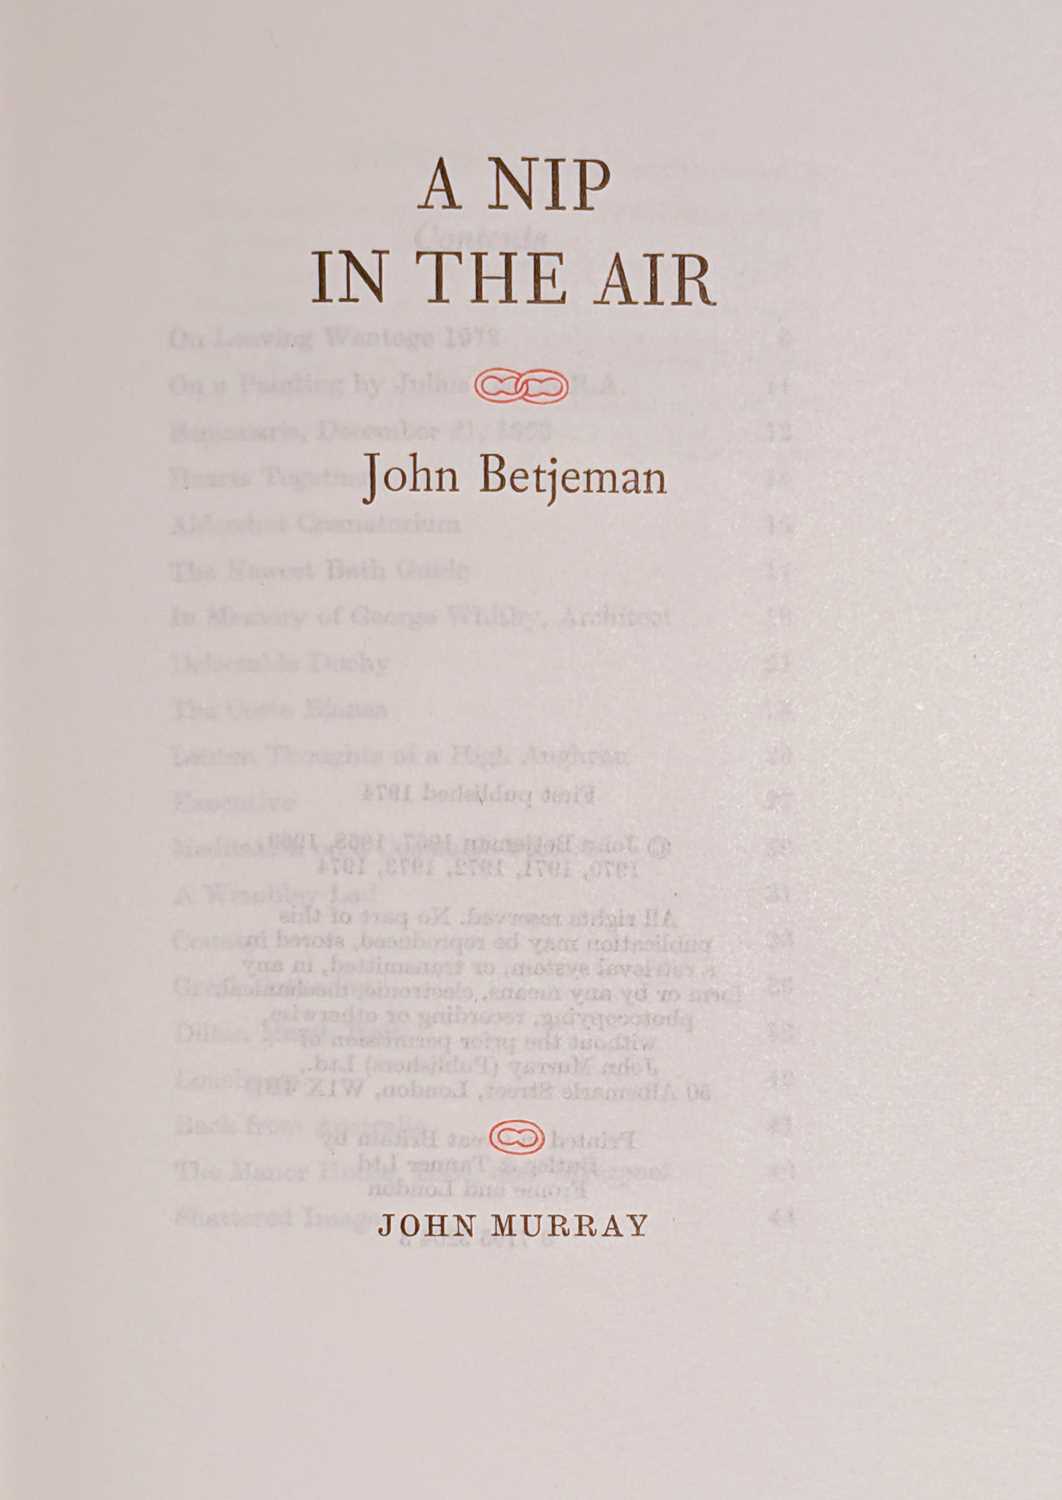 Lot 517 - Betjeman (John). A Nip in the Air, 1974